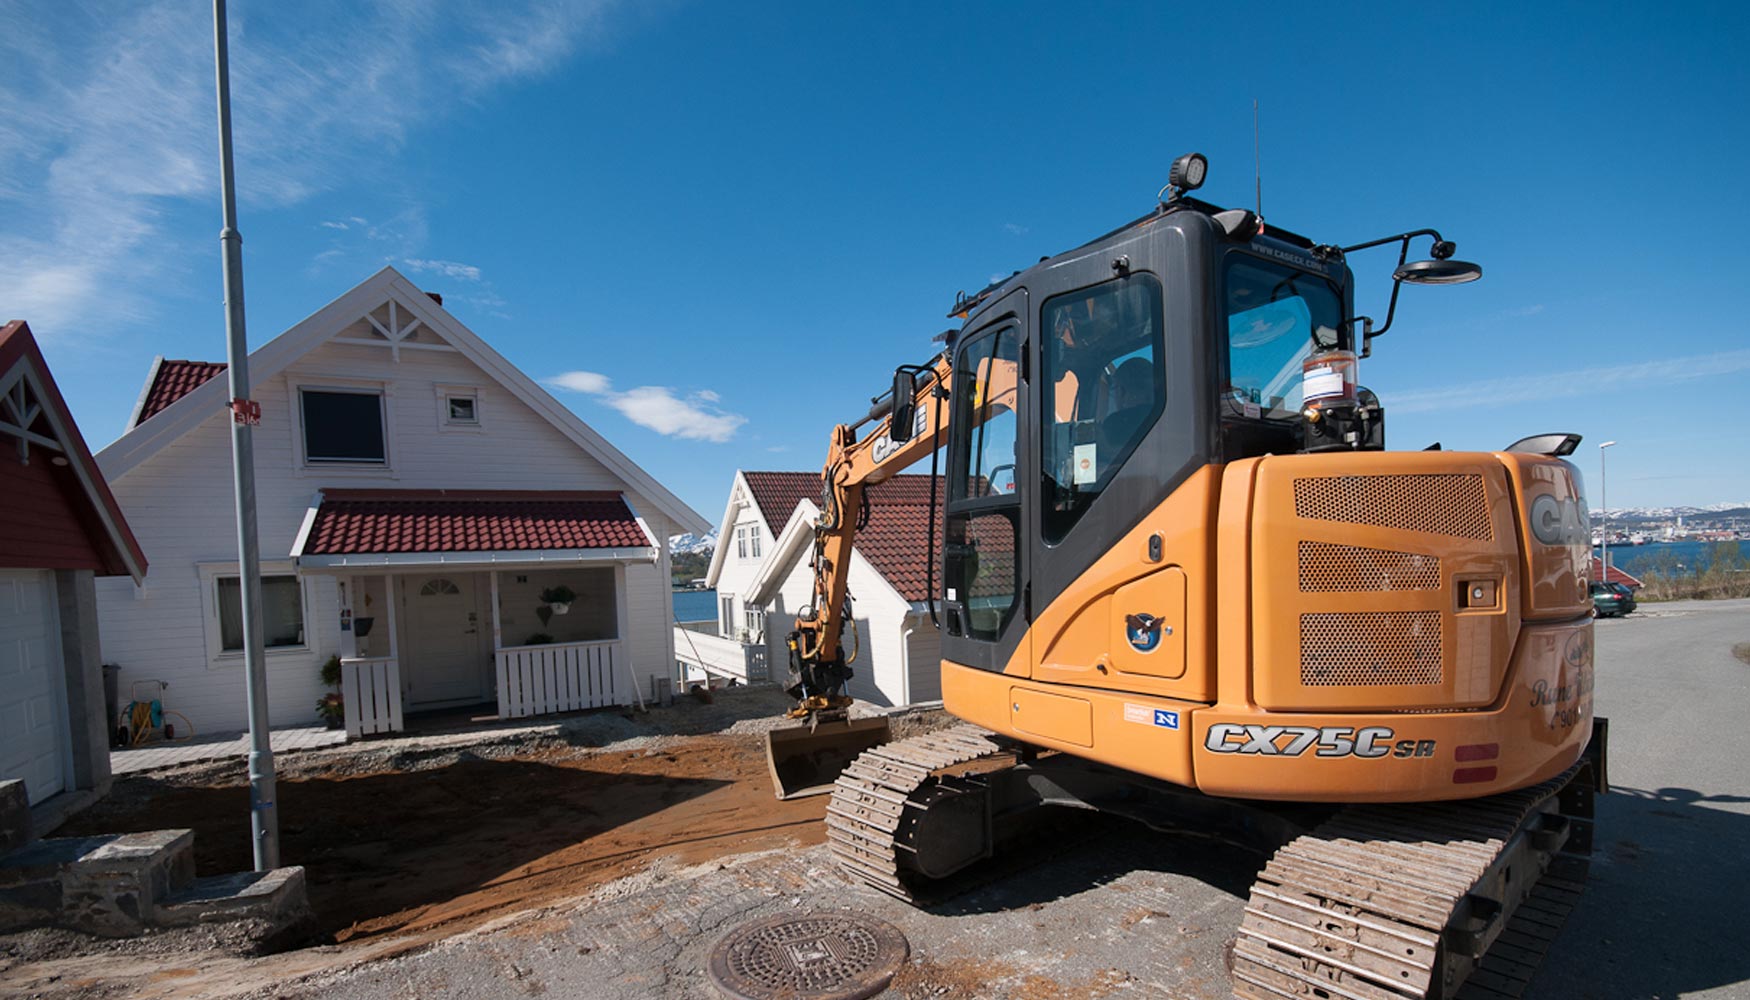 Una excavadora CX75C SR durante las operaciones de construccin en la ciudad de Troms